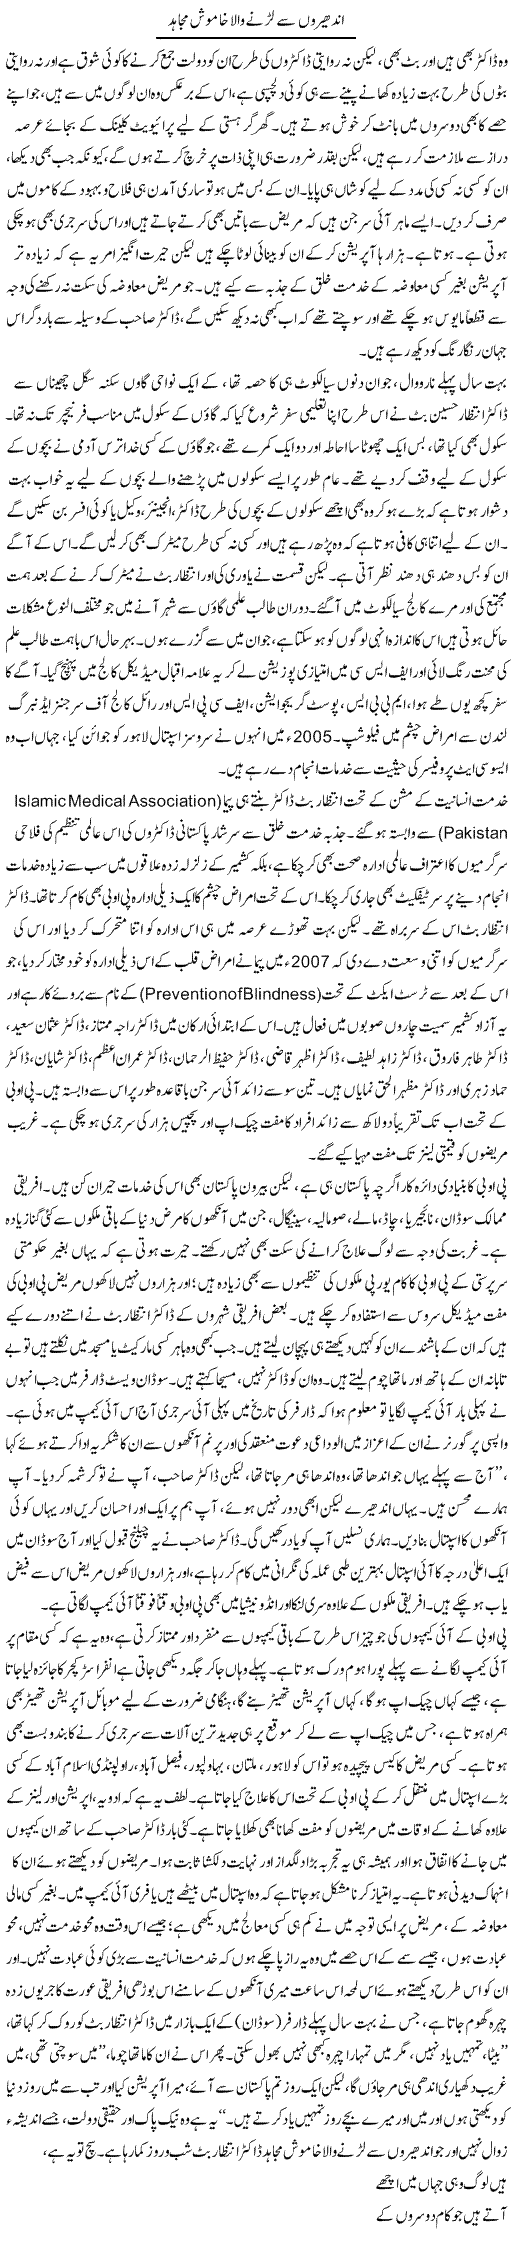 Andheron Se Larne Wala Khamosh Mujahid | Asghar Abdullah | Daily Urdu Columns